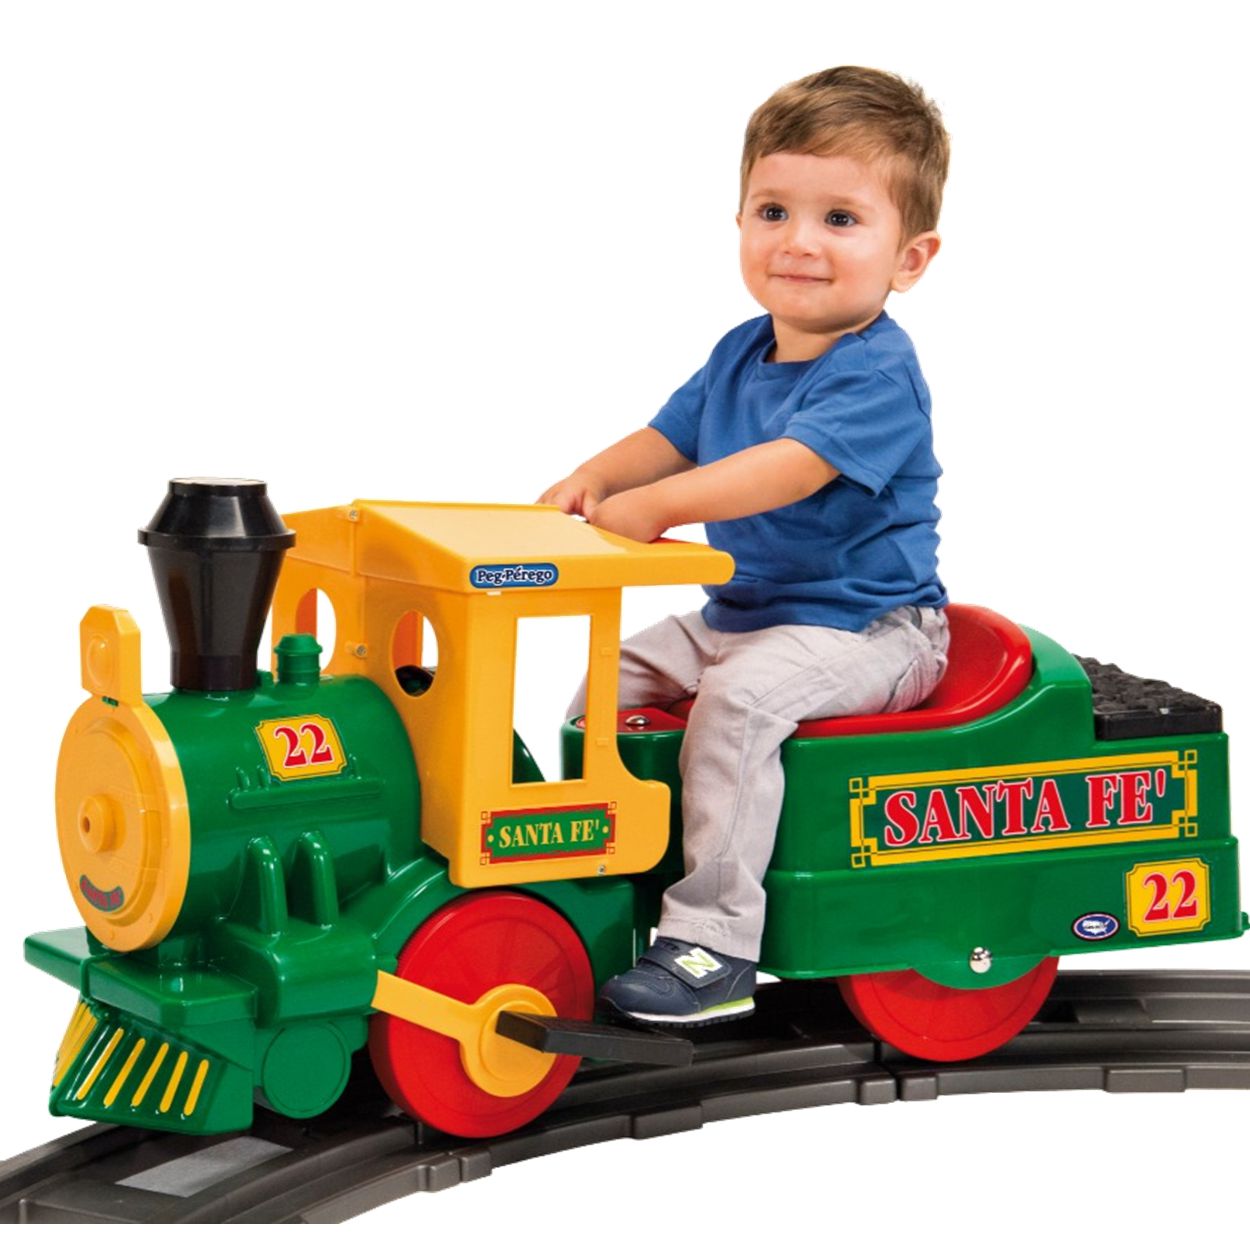 Trem Eletrico Infantil Peg Perego Santa Fe 6V com Trilhos - Maçã Verde Baby